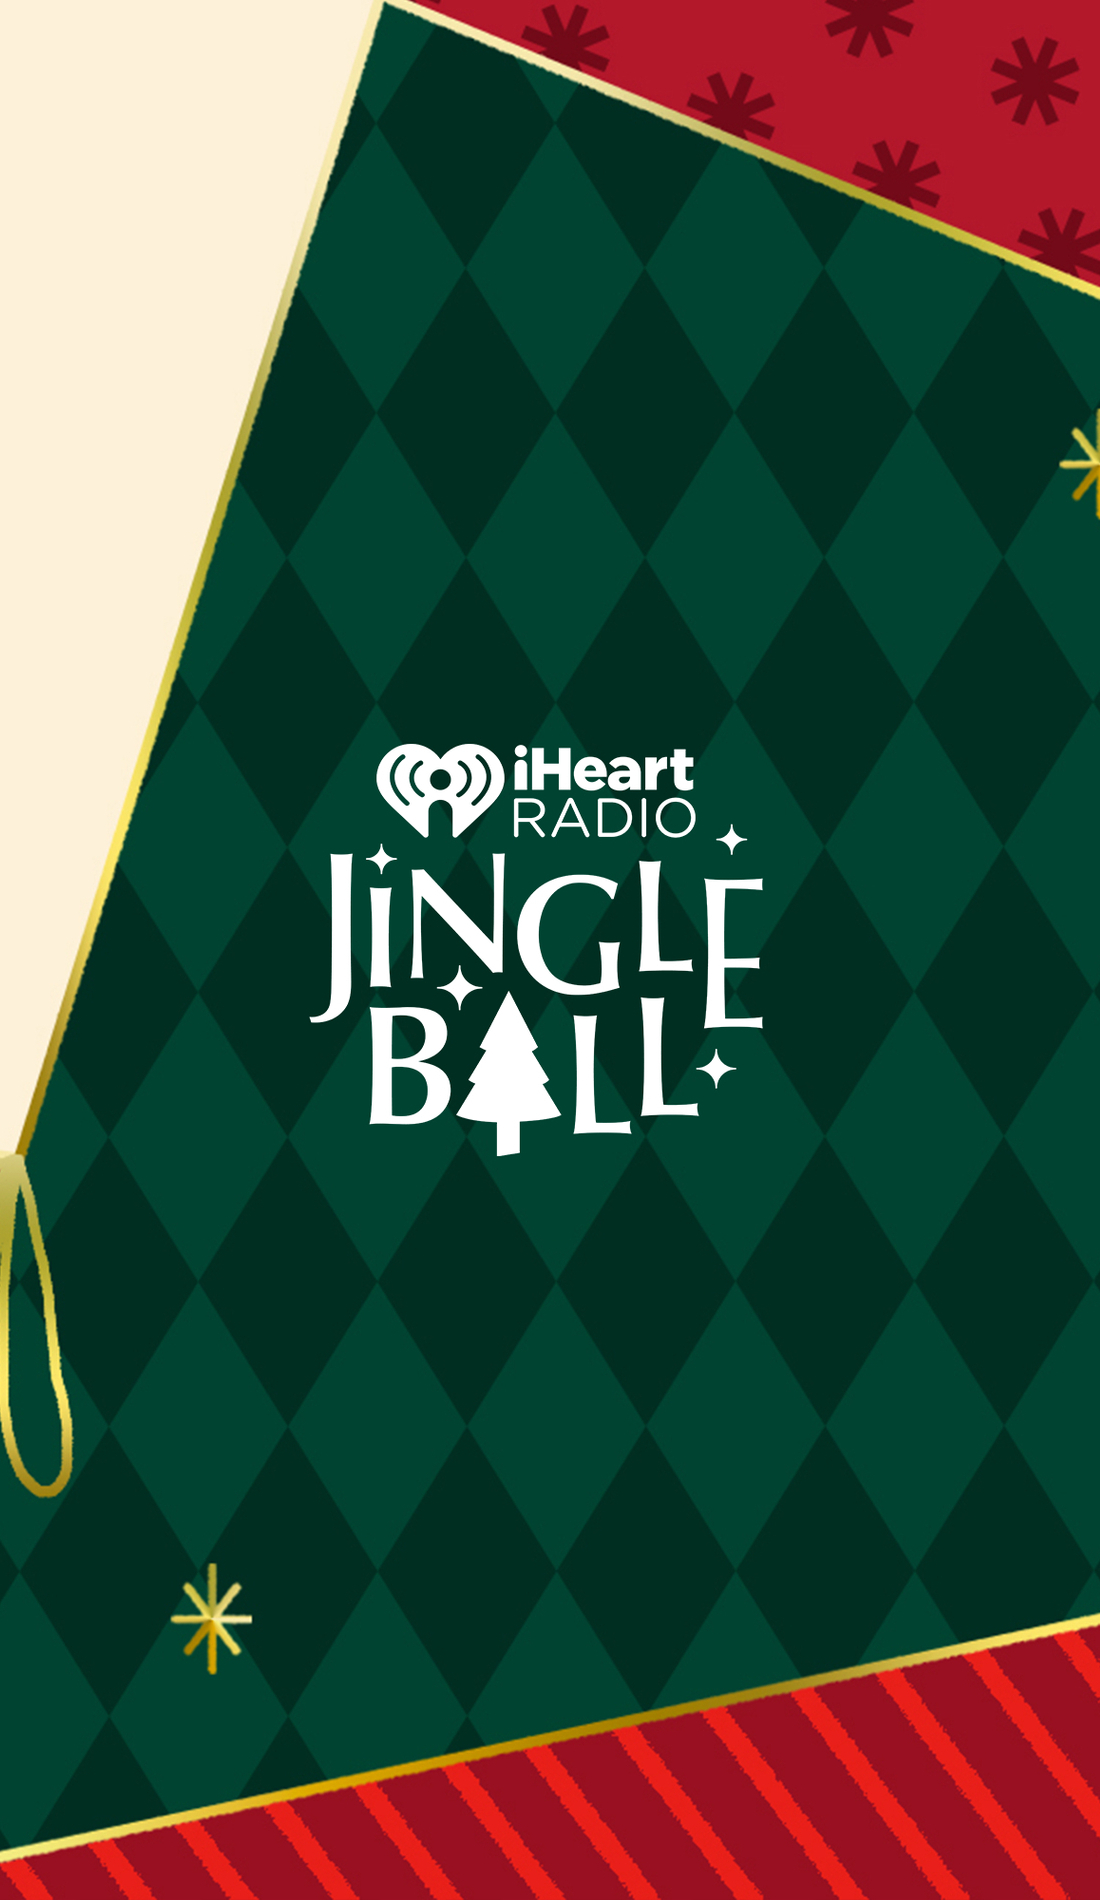 A 	iHeartRadio Jingle Ball live event